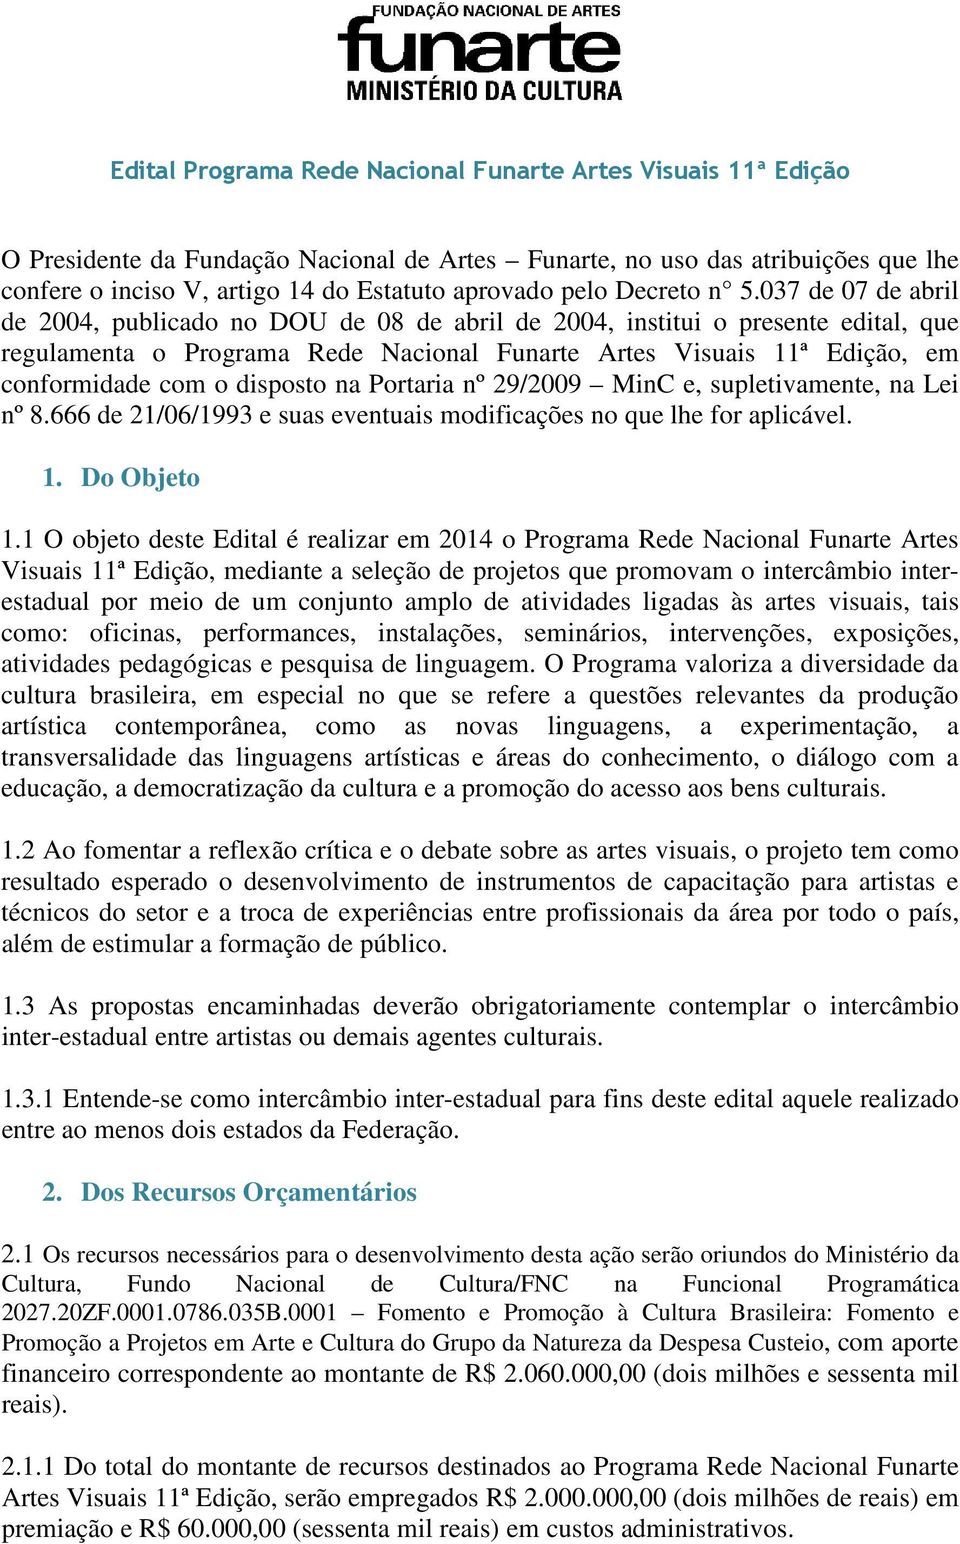 037 de 07 de abril de 2004, publicado no DOU de 08 de abril de 2004, institui o presente edital, que regulamenta o Programa Rede Nacional Funarte Artes Visuais 11ª Edição, em conformidade com o